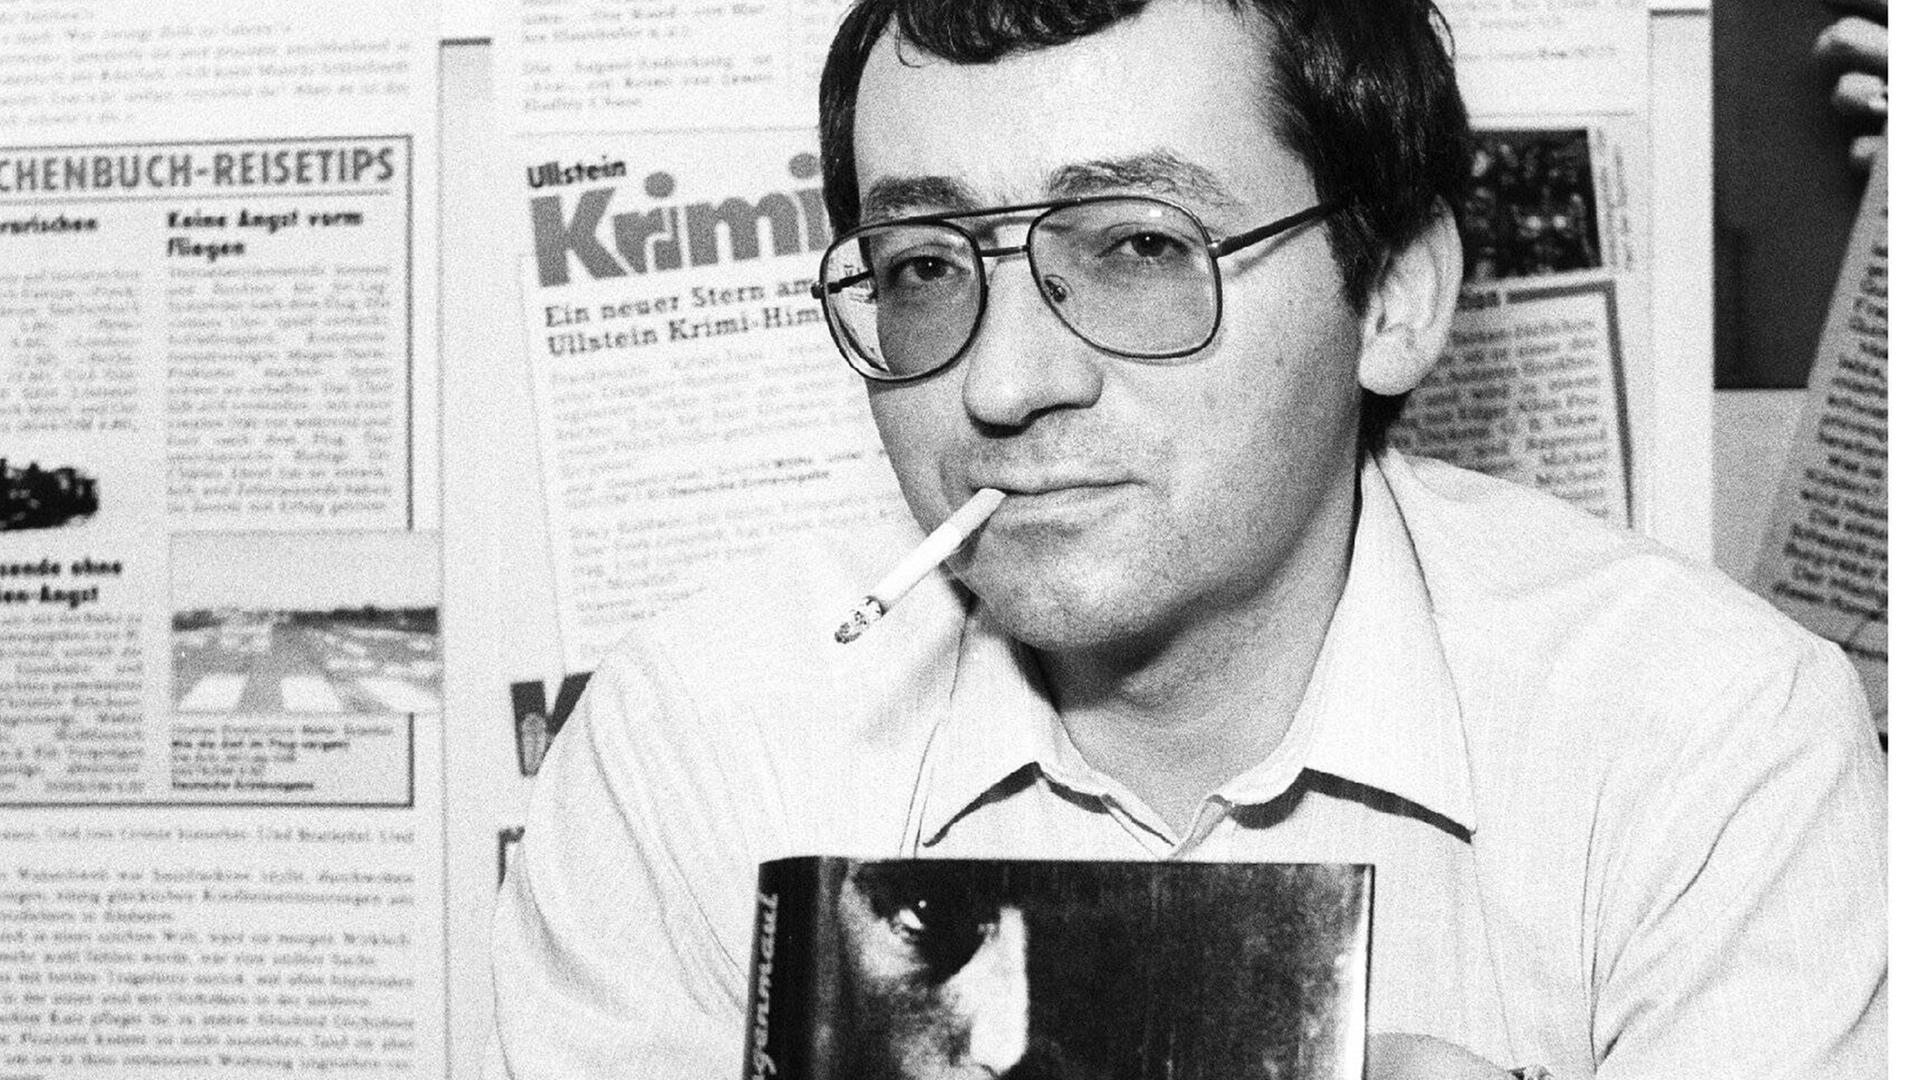 Schwarz-weißes Bild von Jörg Fauser während der Buchmesse 1985 in Frankfurt am Main, halb sitzend mit Buch und Zigarette im Mundwinkel rauchend